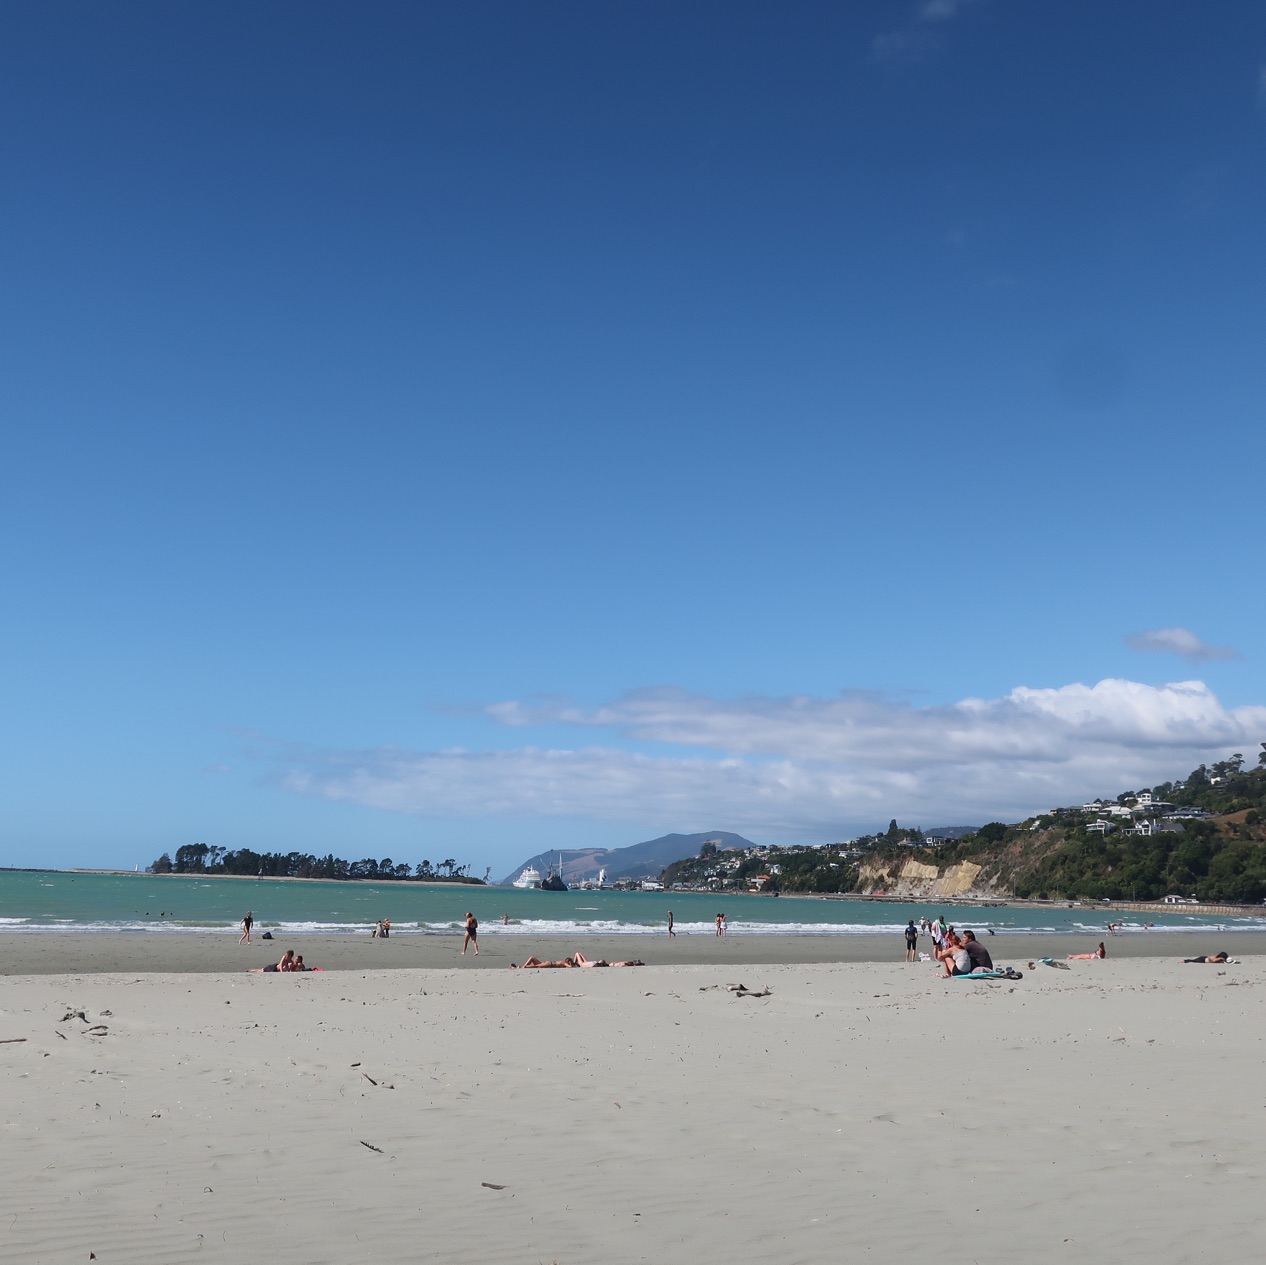 新西兰南岛🇳🇿如果您正在寻找美丽的海滩,请前往塔胡纳努伊海滩!🌊